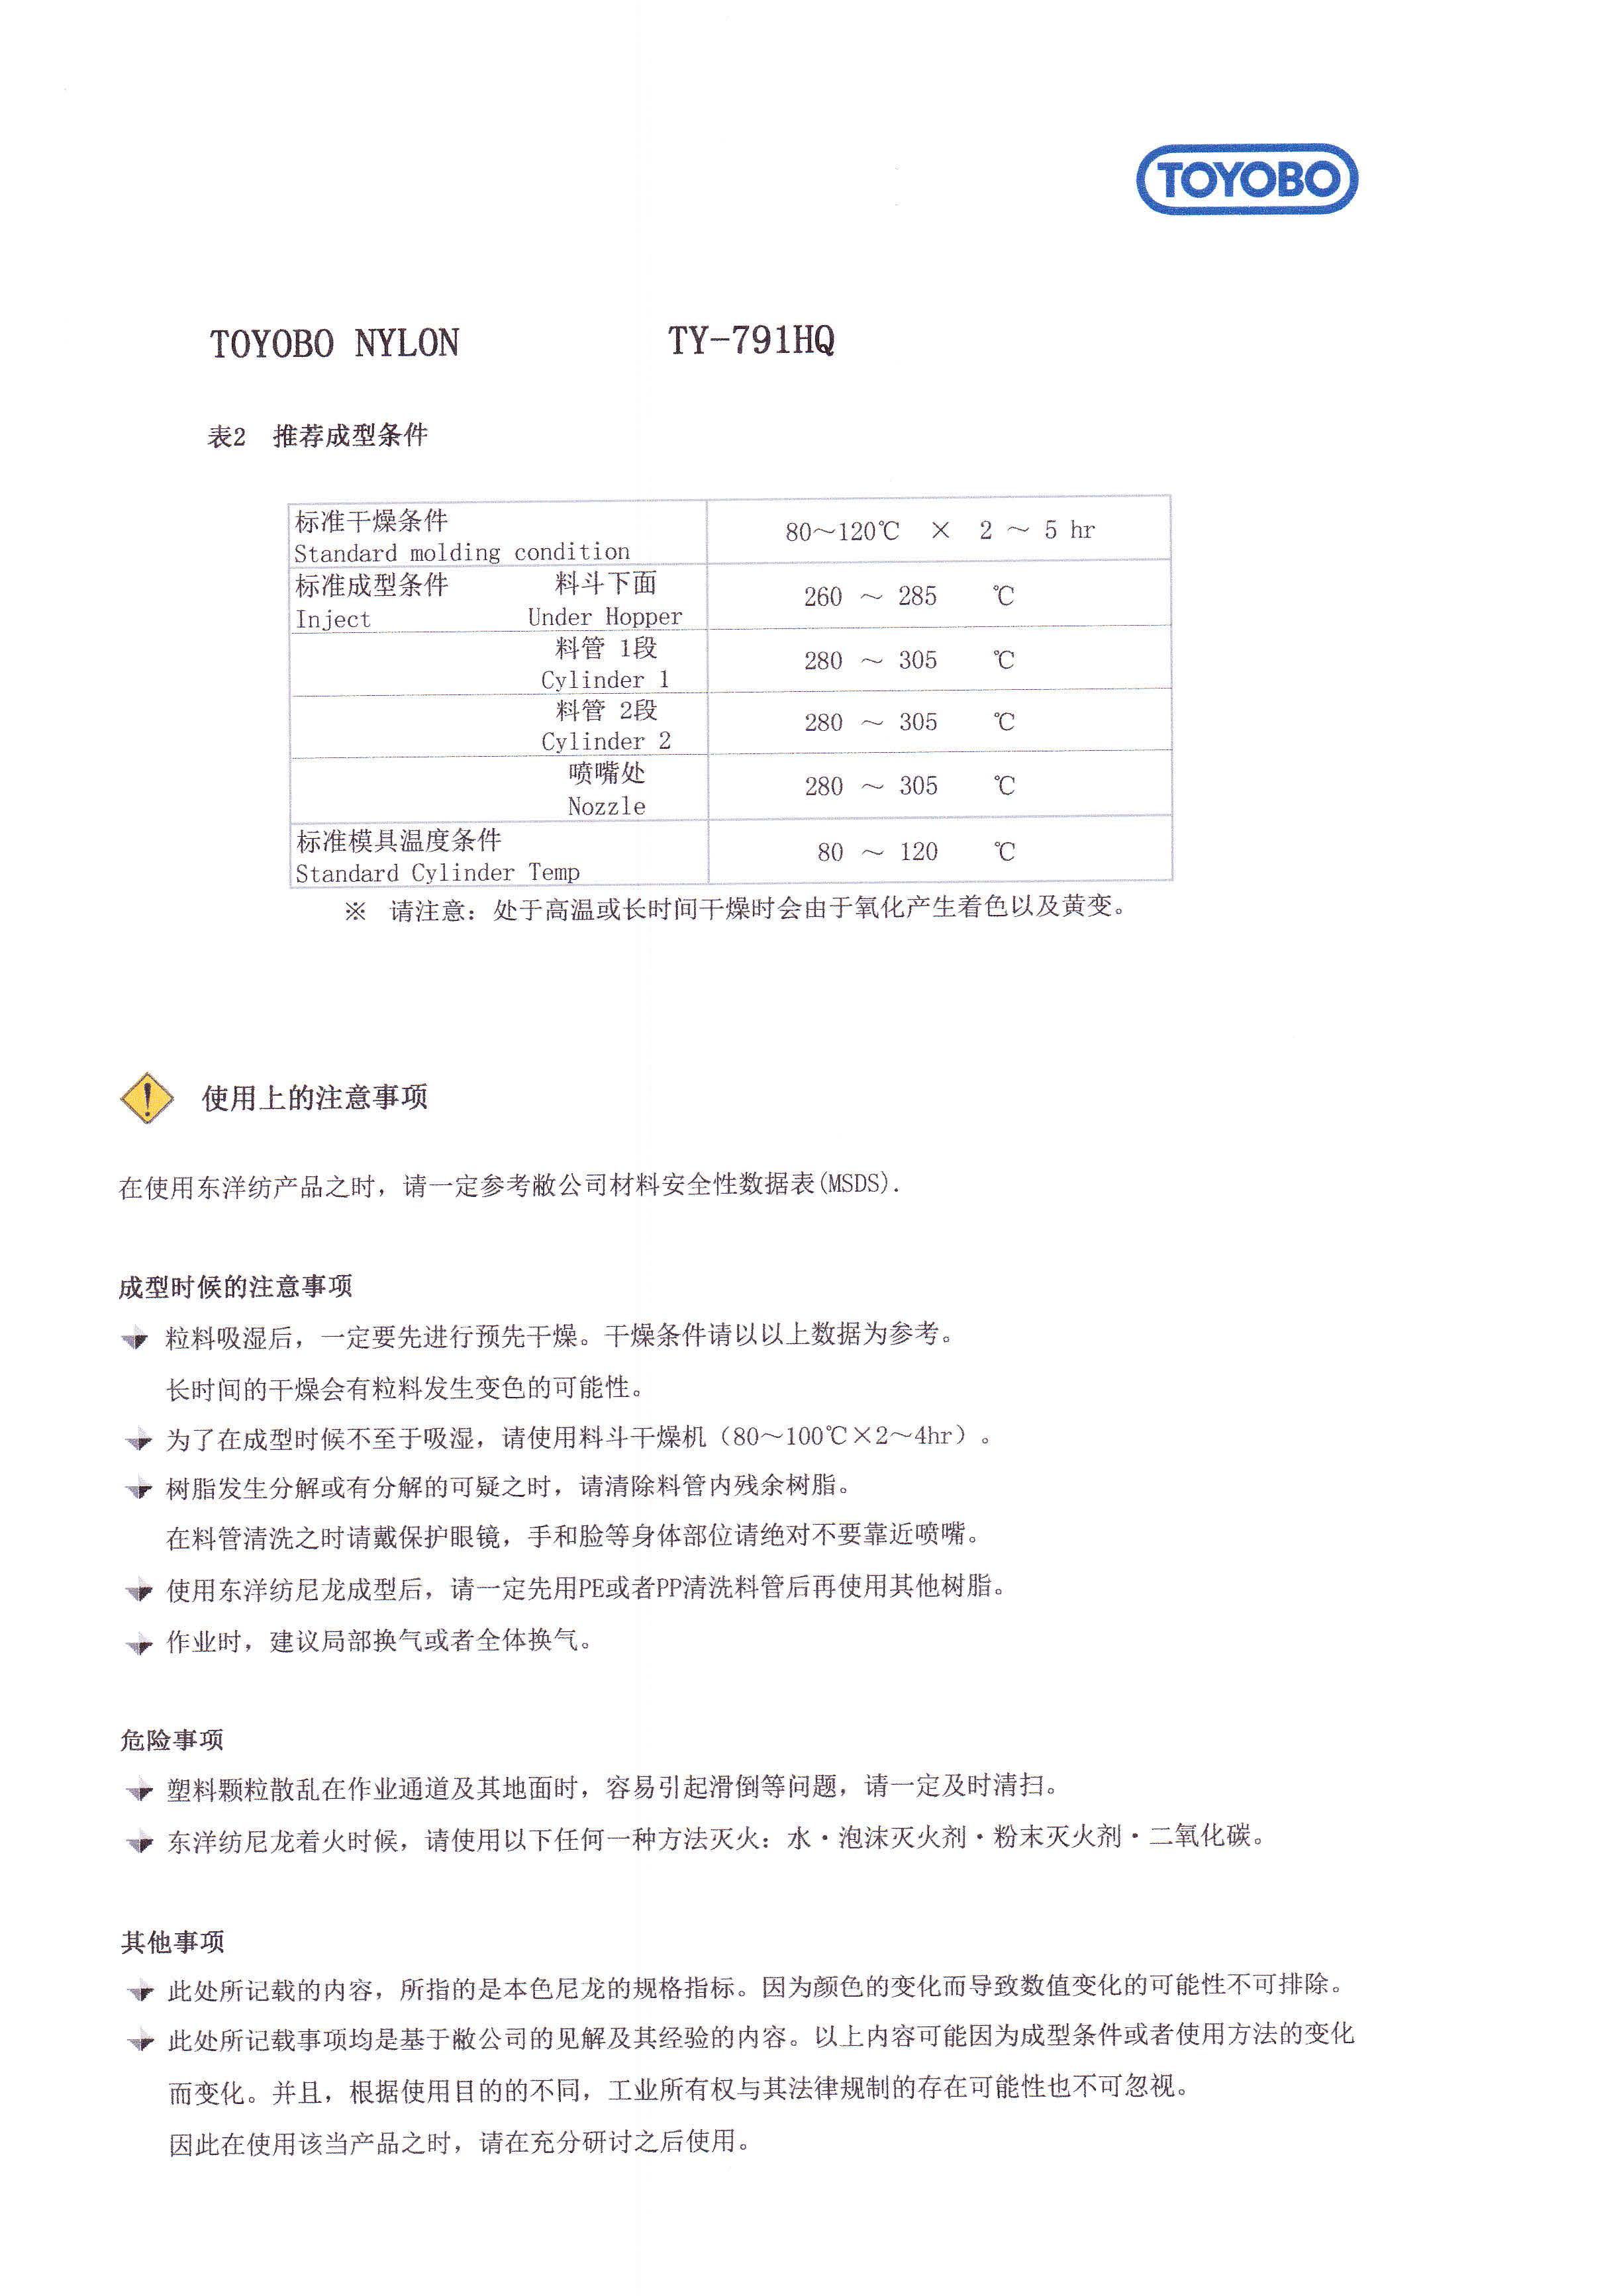 中文・物性（TY-791HQ）_页面_3.jpg